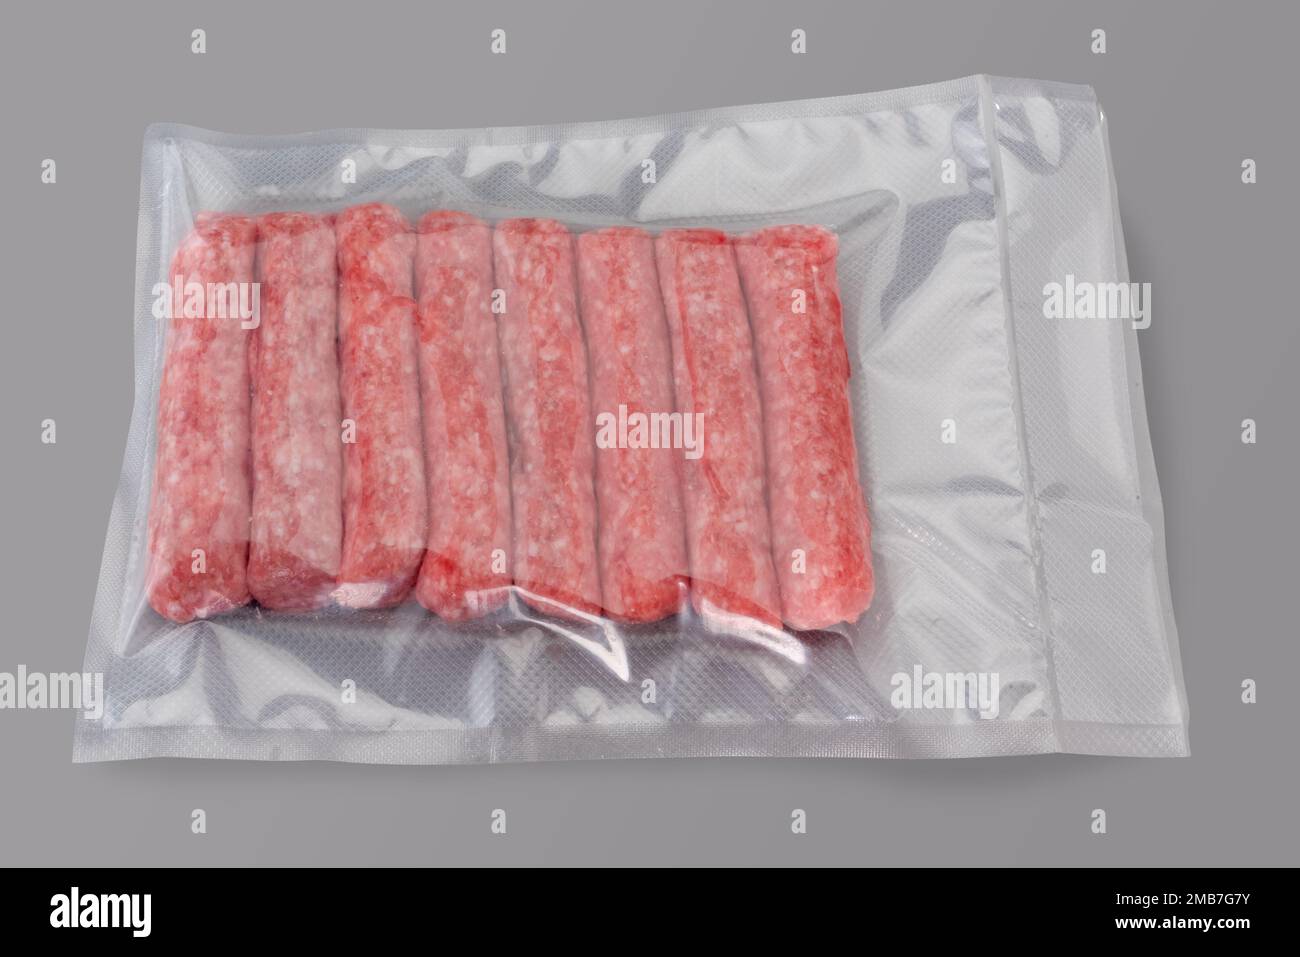 Rohe truthahn- und Schweinefleischwurst in vakuumverpackter Verpackung, versiegelt für Sous-Vide-Kochen, isoliert auf grauem Hintergrund in Draufsicht Stockfoto